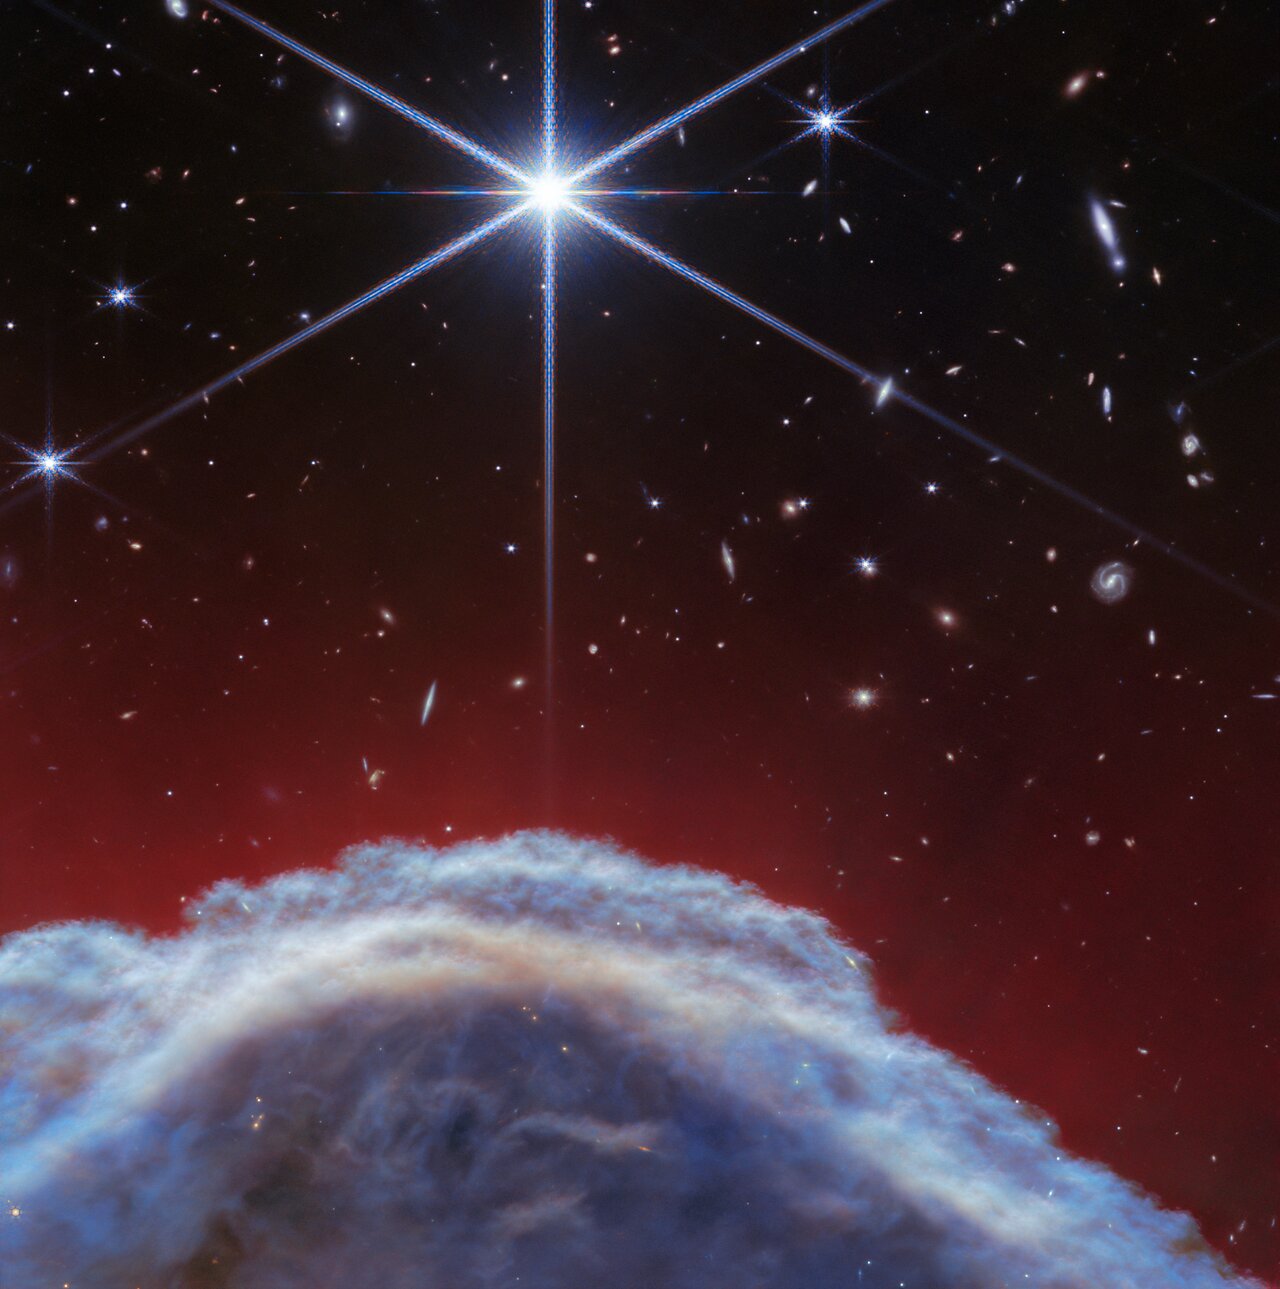 El telescopio espacial James Webb de la NASA/ESA/CSA ha capturado las imágenes infrarrojas más nítidas hasta la fecha de uno de los objetos más distintivos de nuestros cielos, la Nebulosa Cabeza de Caballo. Estas observaciones muestran una parte de la icónica nebulosa bajo una luz completamente nueva, capturando su complejidad con una resolución espacial sin precedentes. Las nuevas imágenes de Webb muestran parte del cielo en la constelación de Orión (El Cazador), en el lado occidental de la nube molecular de Orión B. Elevándose de las turbulentas olas de polvo y gas se encuentra la Nebulosa Cabeza de Caballo, también conocida como Barnard 33, que se encuentra a unos 1300 años luz de distancia. 